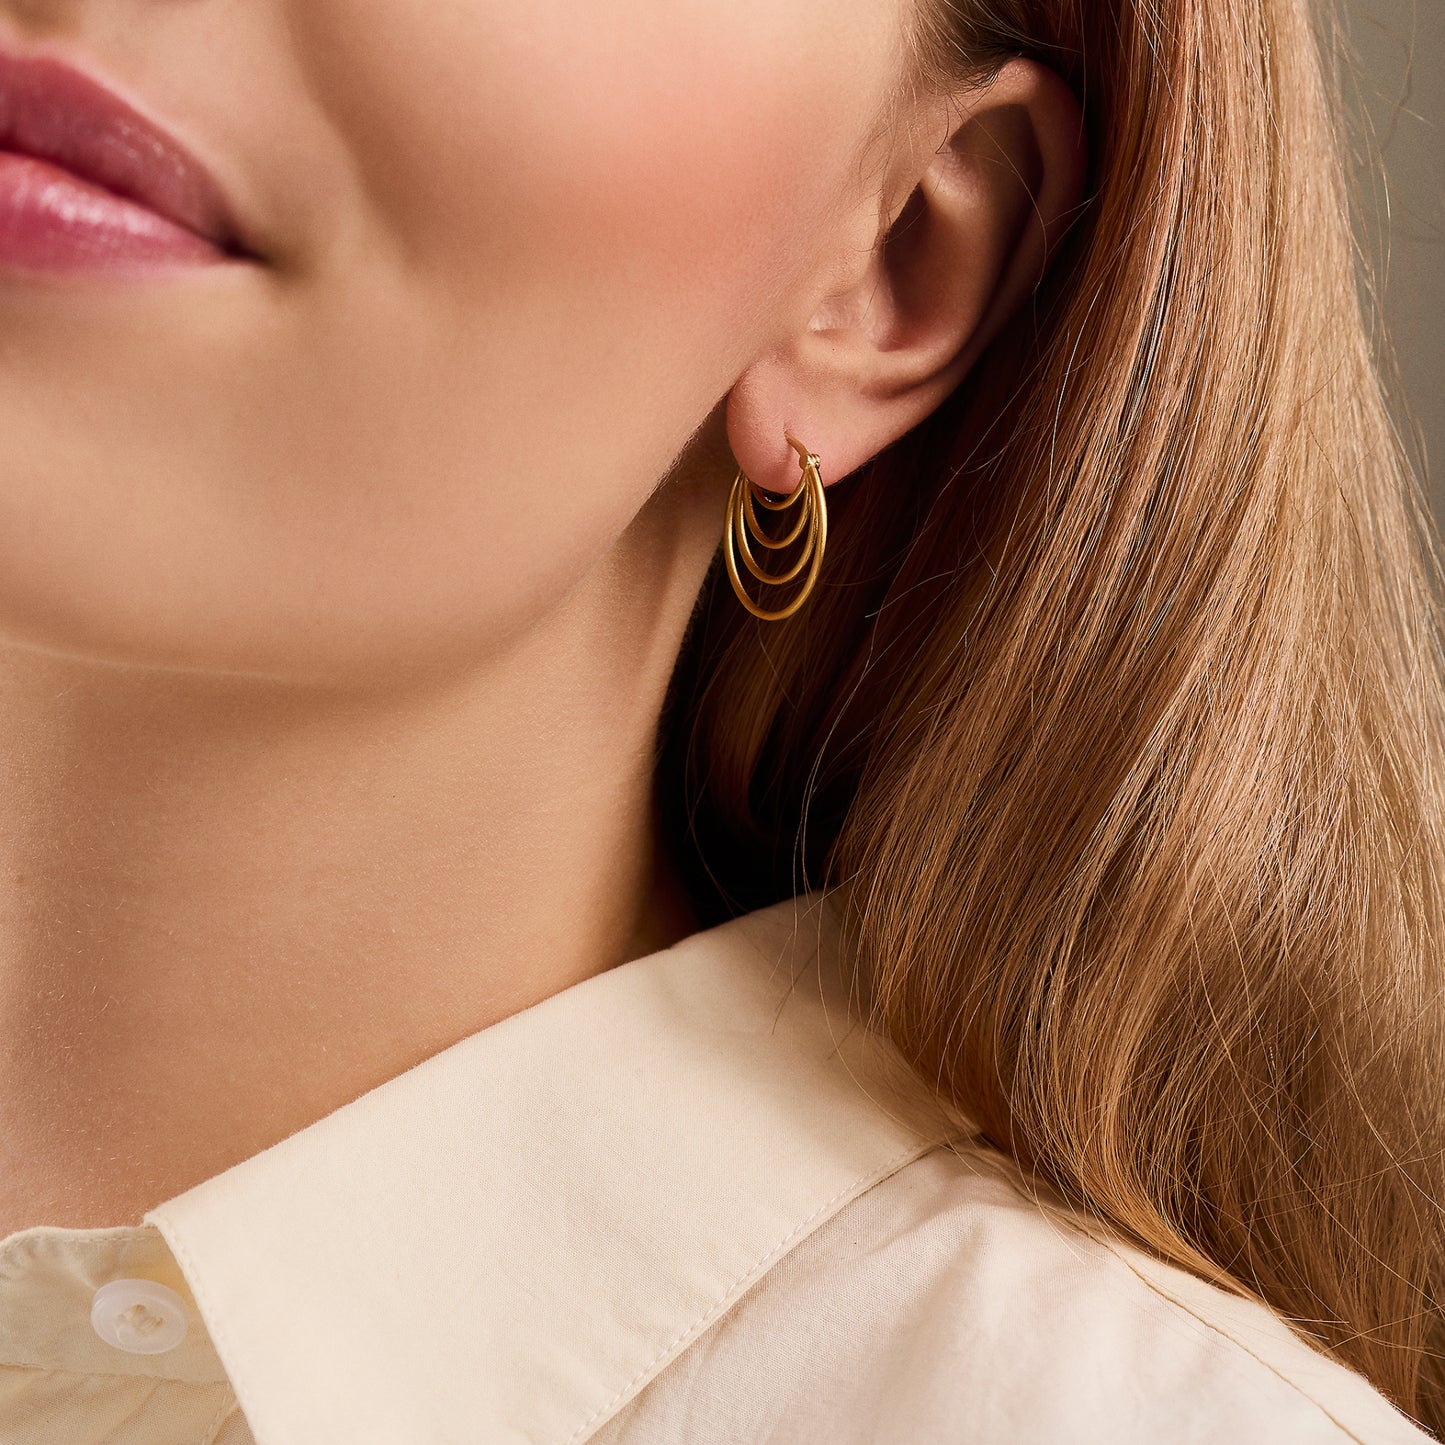 Silhouette earrings